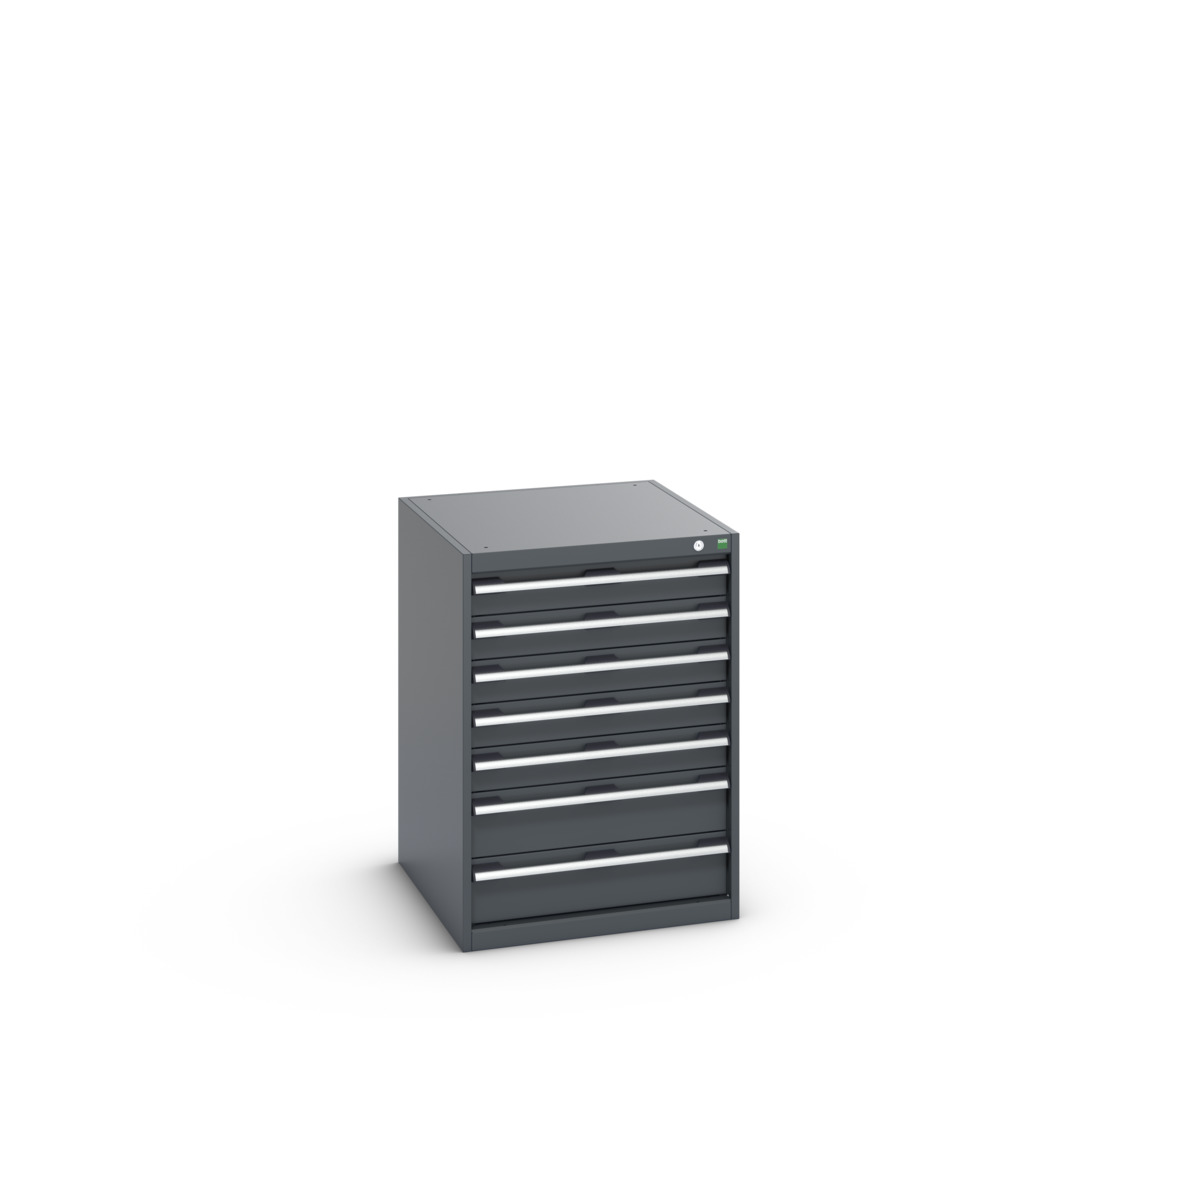 40027090.77V - cubio drawer cabinet